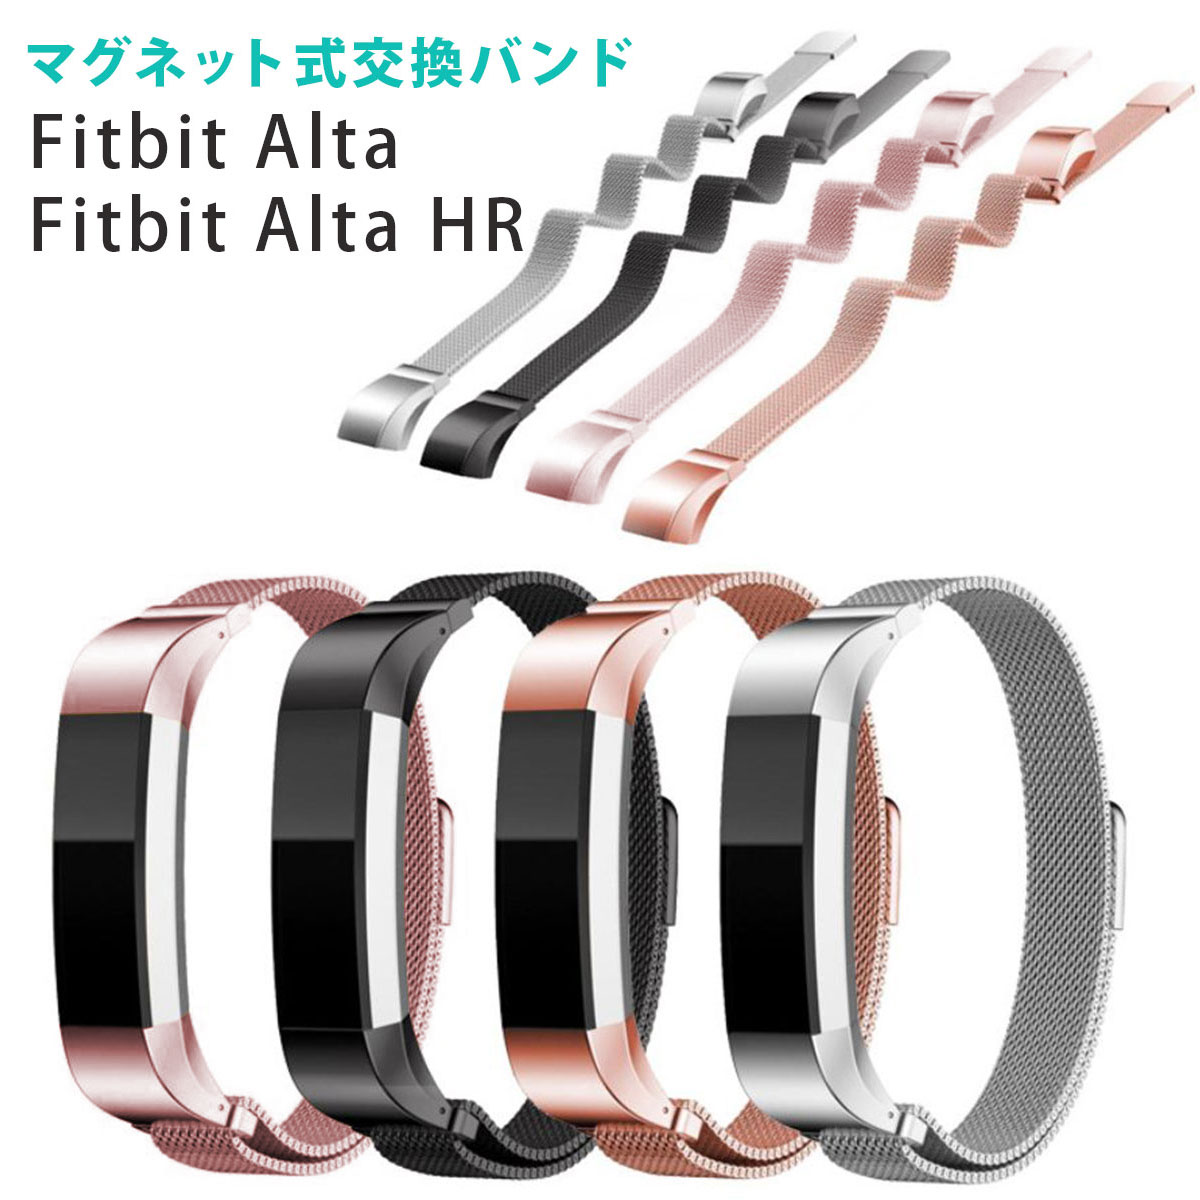 【在庫処分セール】Fitbit Alta HR 交換